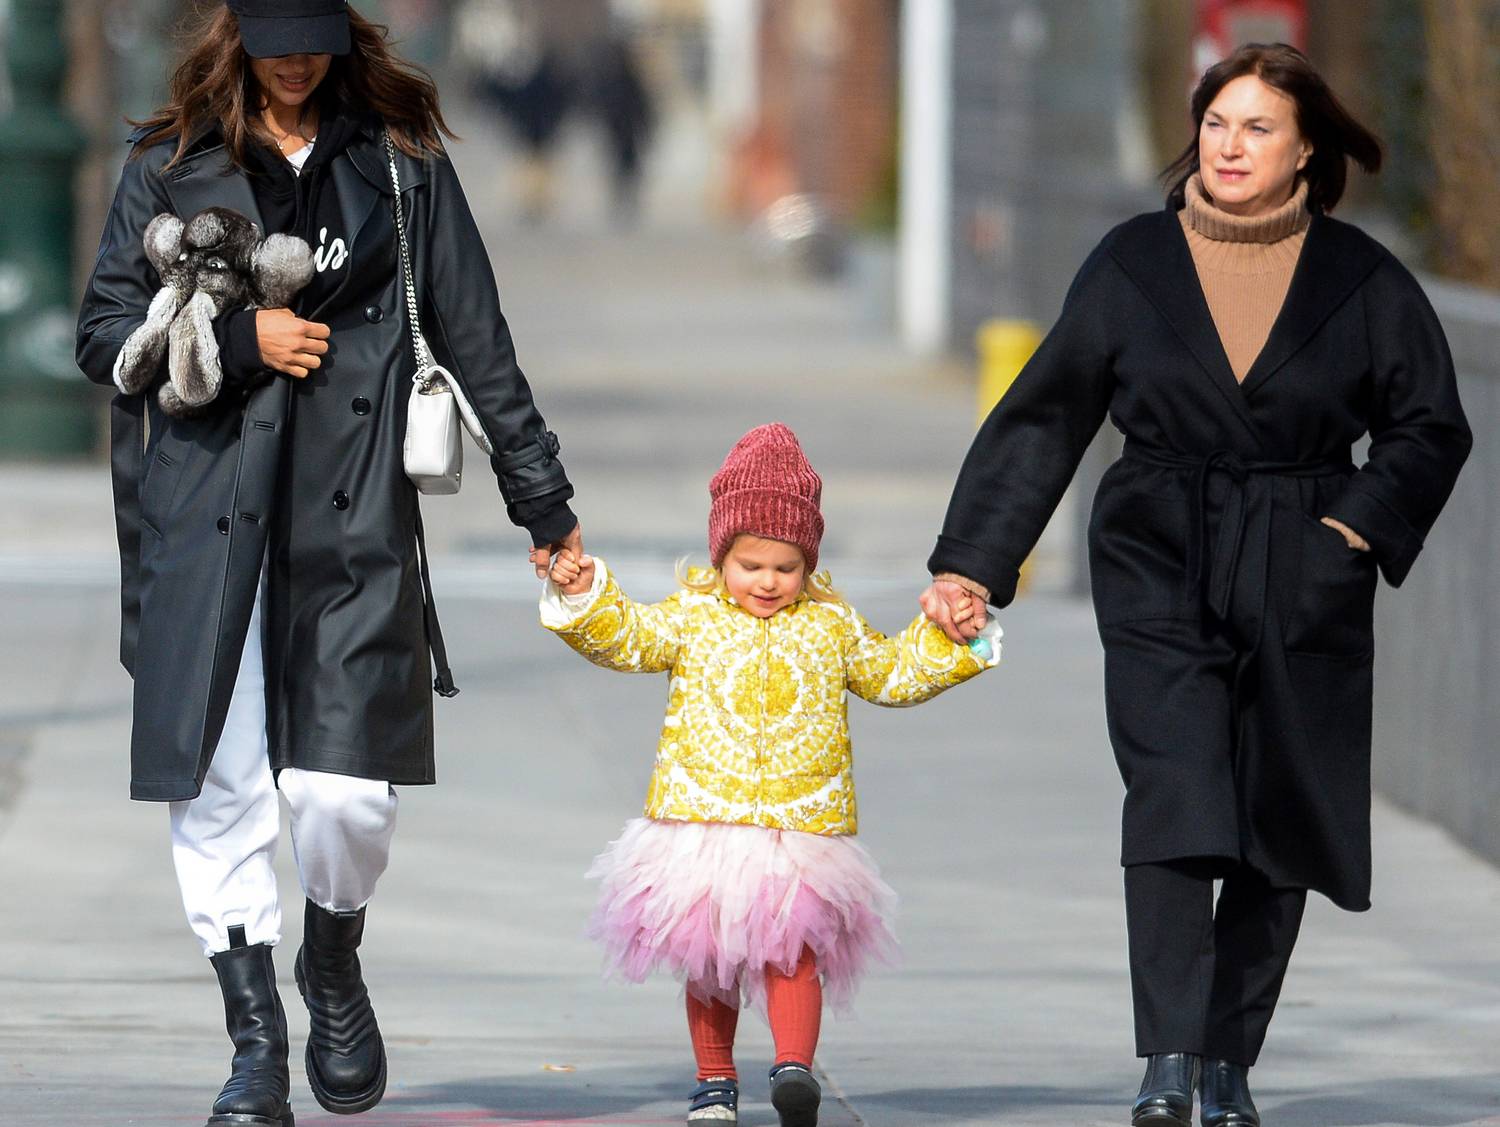 Irina Shayk ismét stílusos szettben vitte sétálni kislányát